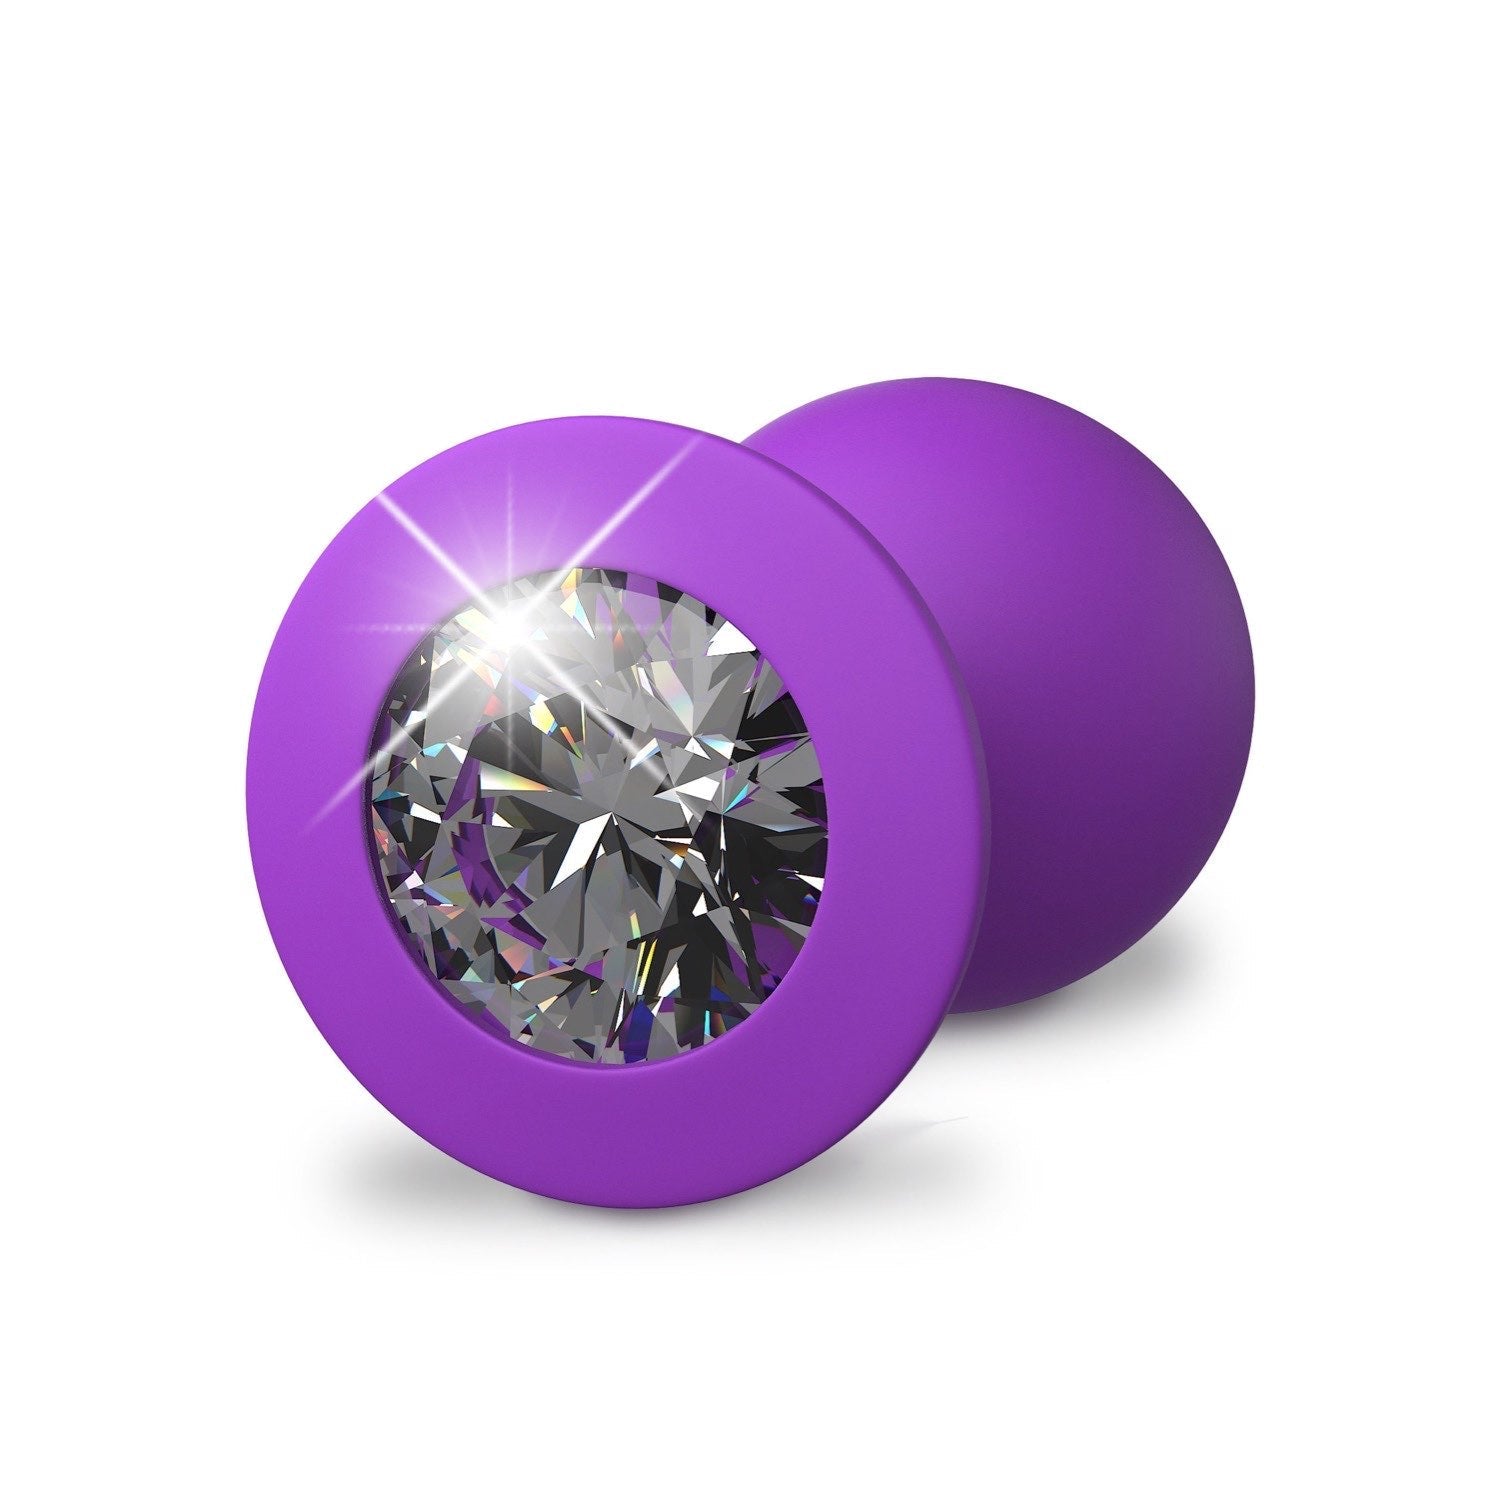 为她幻想 Little Gem 中号插头 - 紫色 8.1 厘米对接插头，带宝石底座 by Pipedream